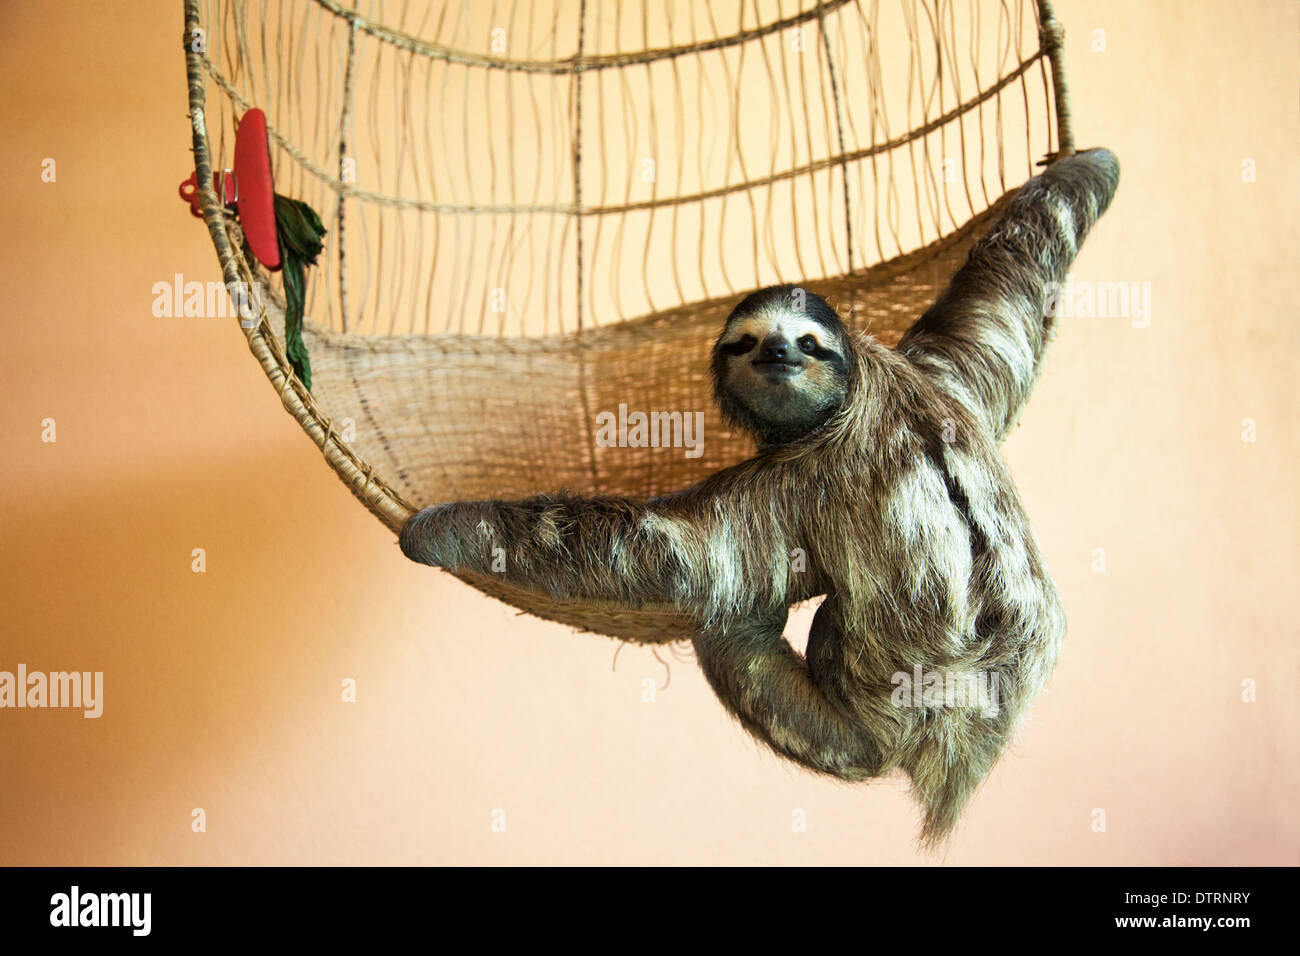 Gerettete Dreizangen-Sloth (Bradypus variegatus), die an einem Korb im Sloth Sanctuary in Costa Rica hängen Stockfoto